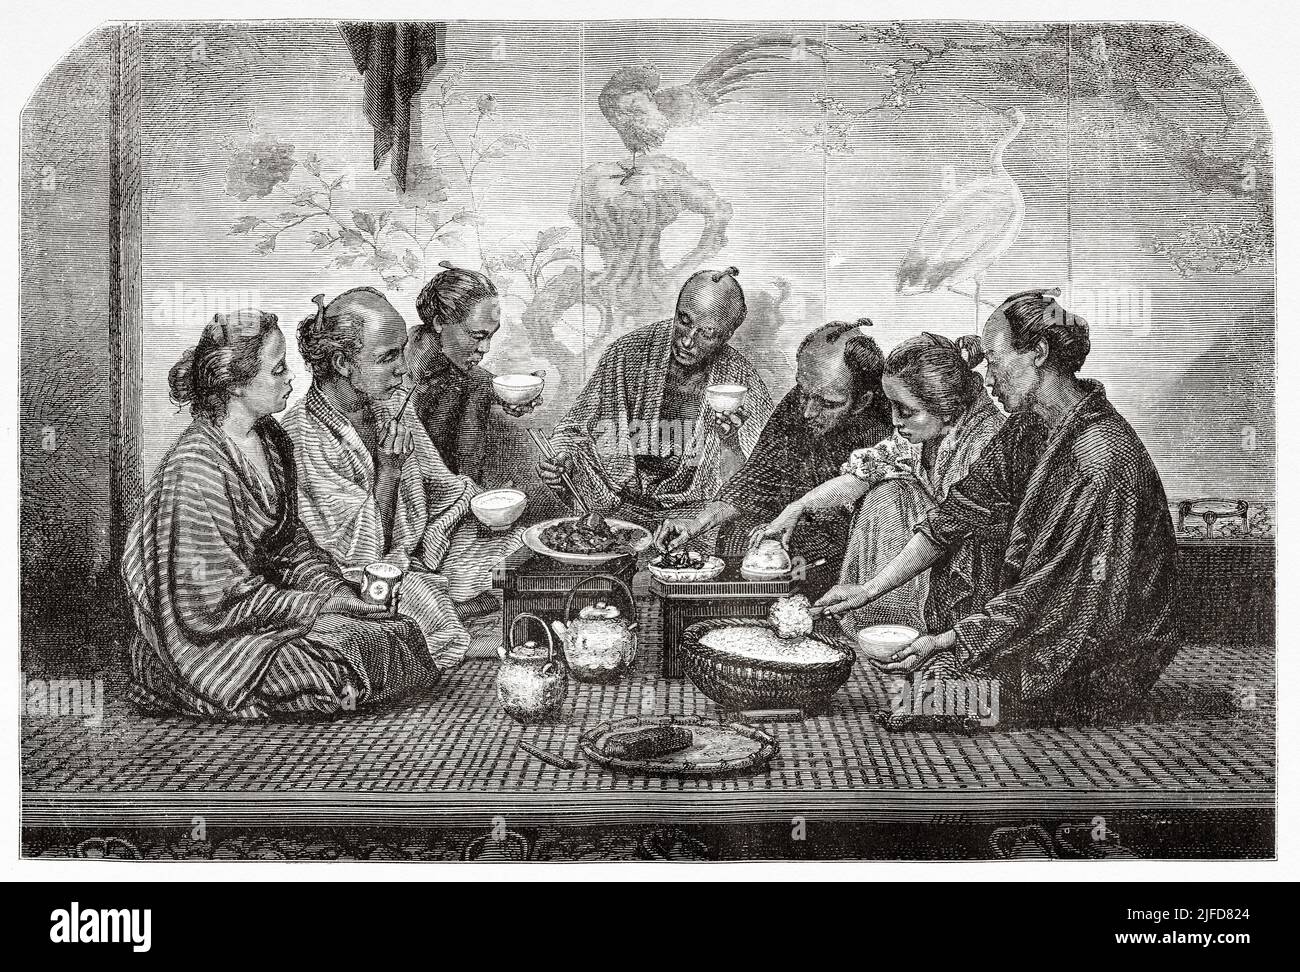 La cena de una familia burguesa, Tokio. Japón, Asia. Viaje a Japón en Aime Humbert 1863-1864 desde Le Tour du Monde 1867 Foto de stock